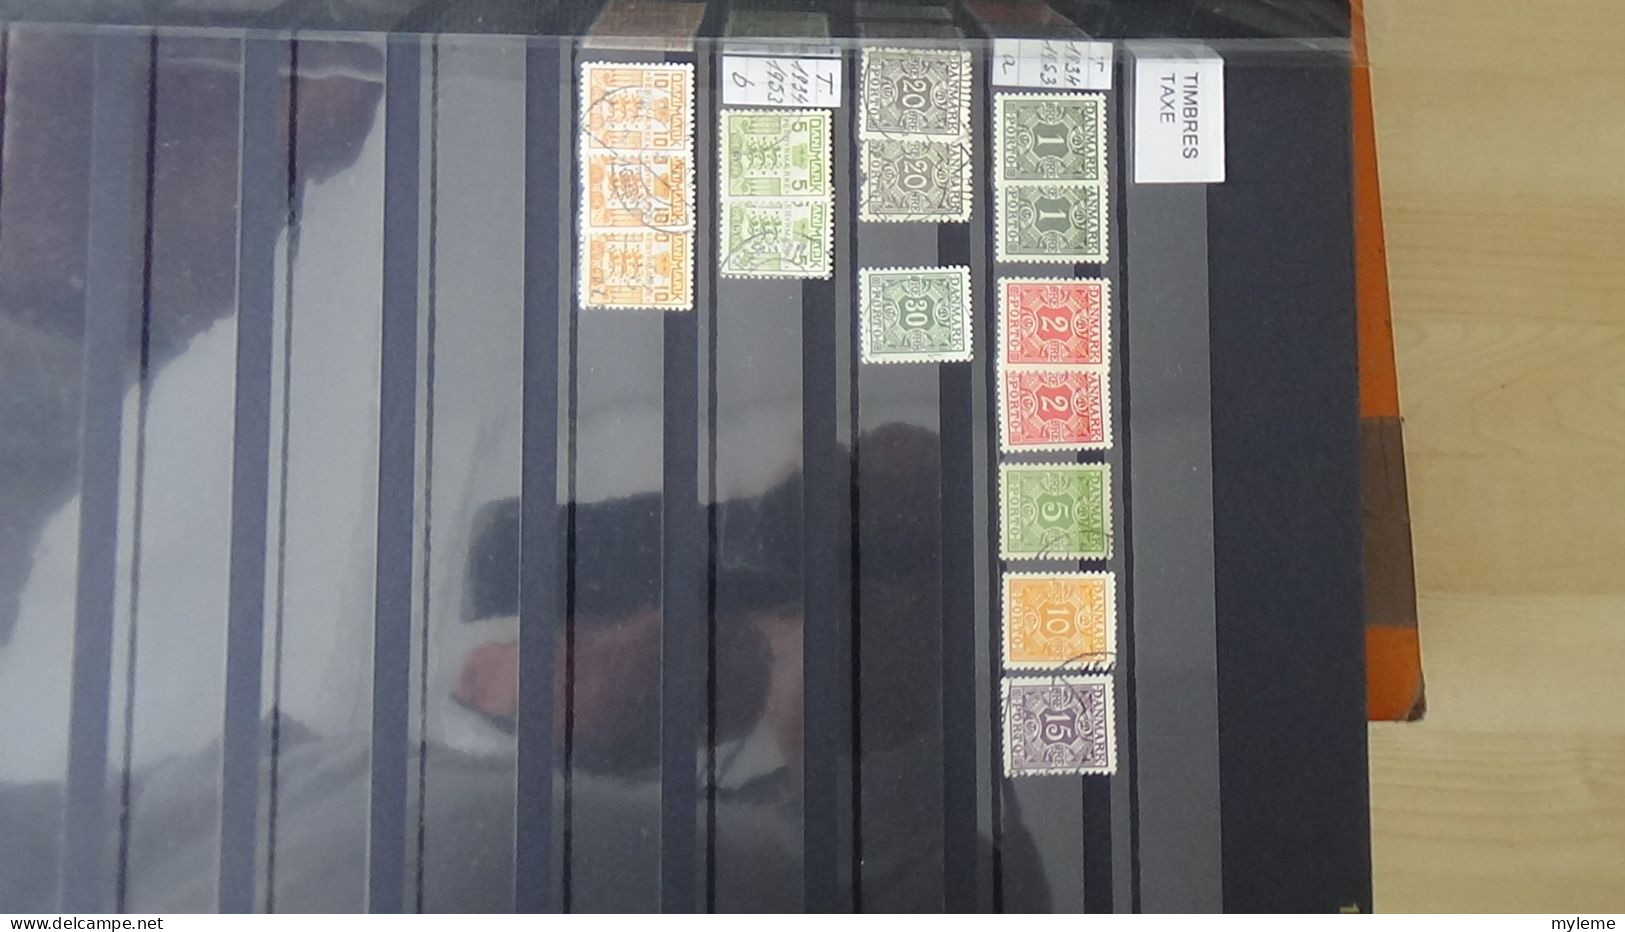 BF43 Bel ensemble de timbres de divers pays dont bloc N° 3 ** signé (1 adhérence en haut) voir scan. Cote 800 euros